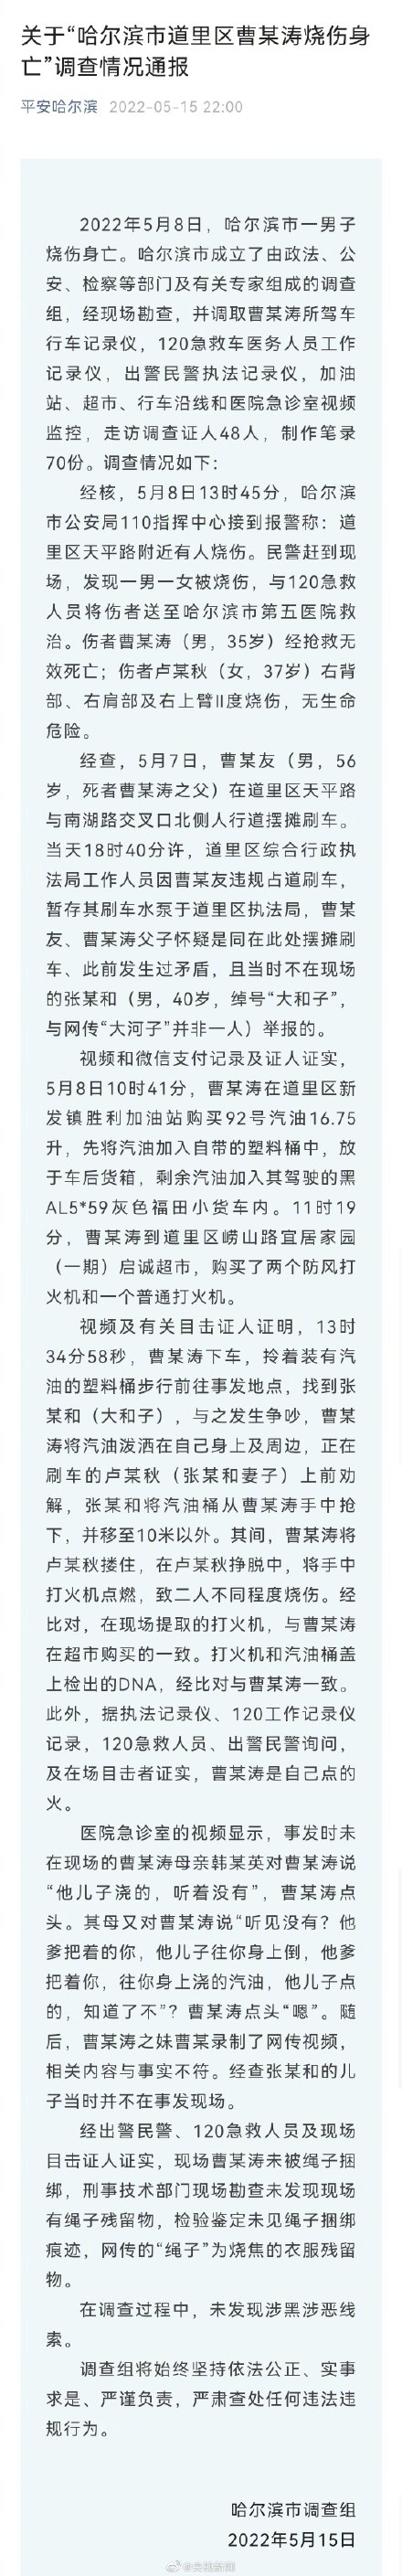 官方通报“黑龙江哈尔滨市道里区曹某涛烧伤身亡”事件调查情况